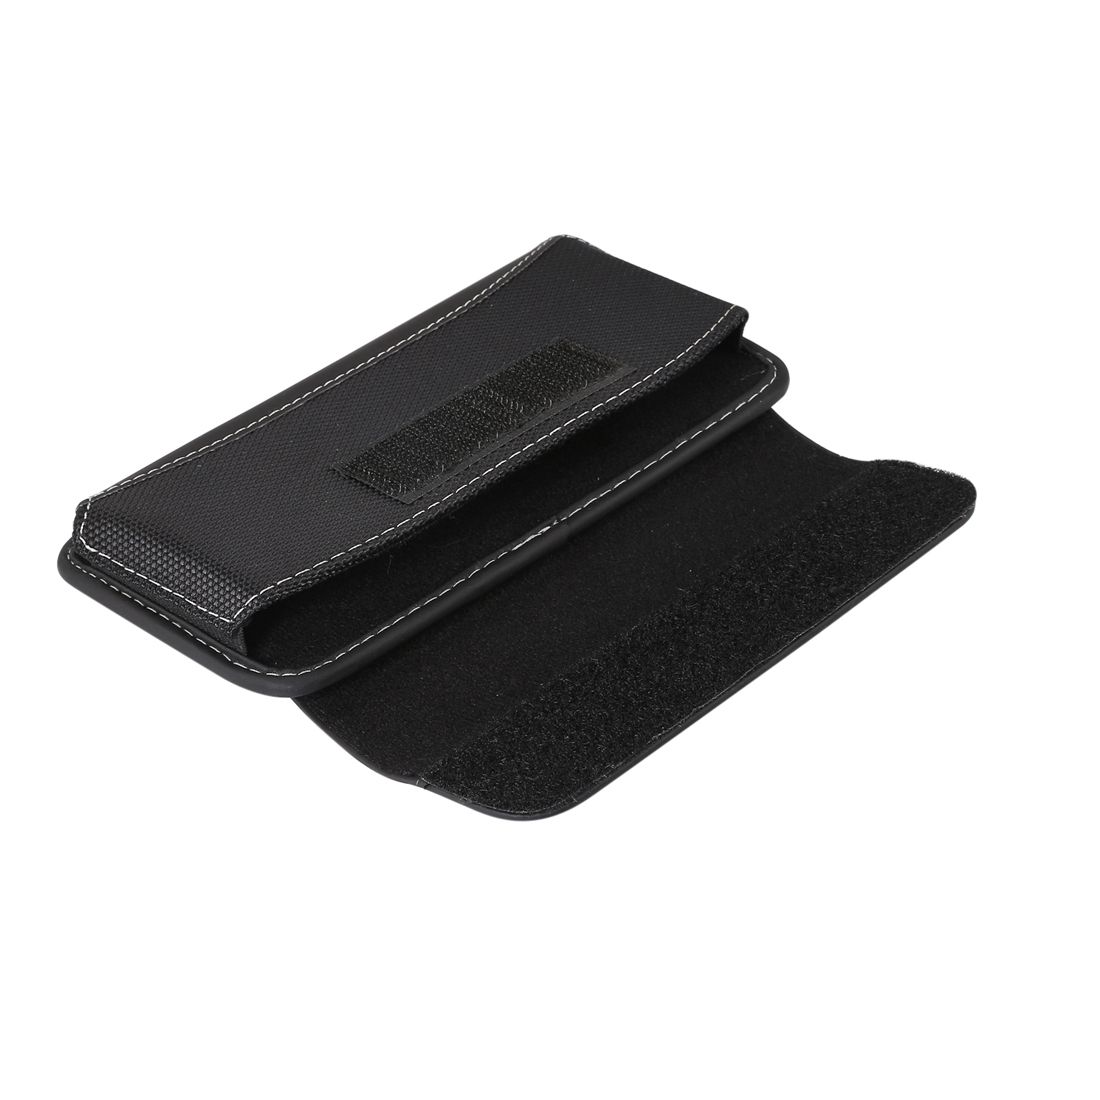 Belt Case Cover Horizontal New Design Leather & Nylon for Ulefone Armor 6E (2019) - Black